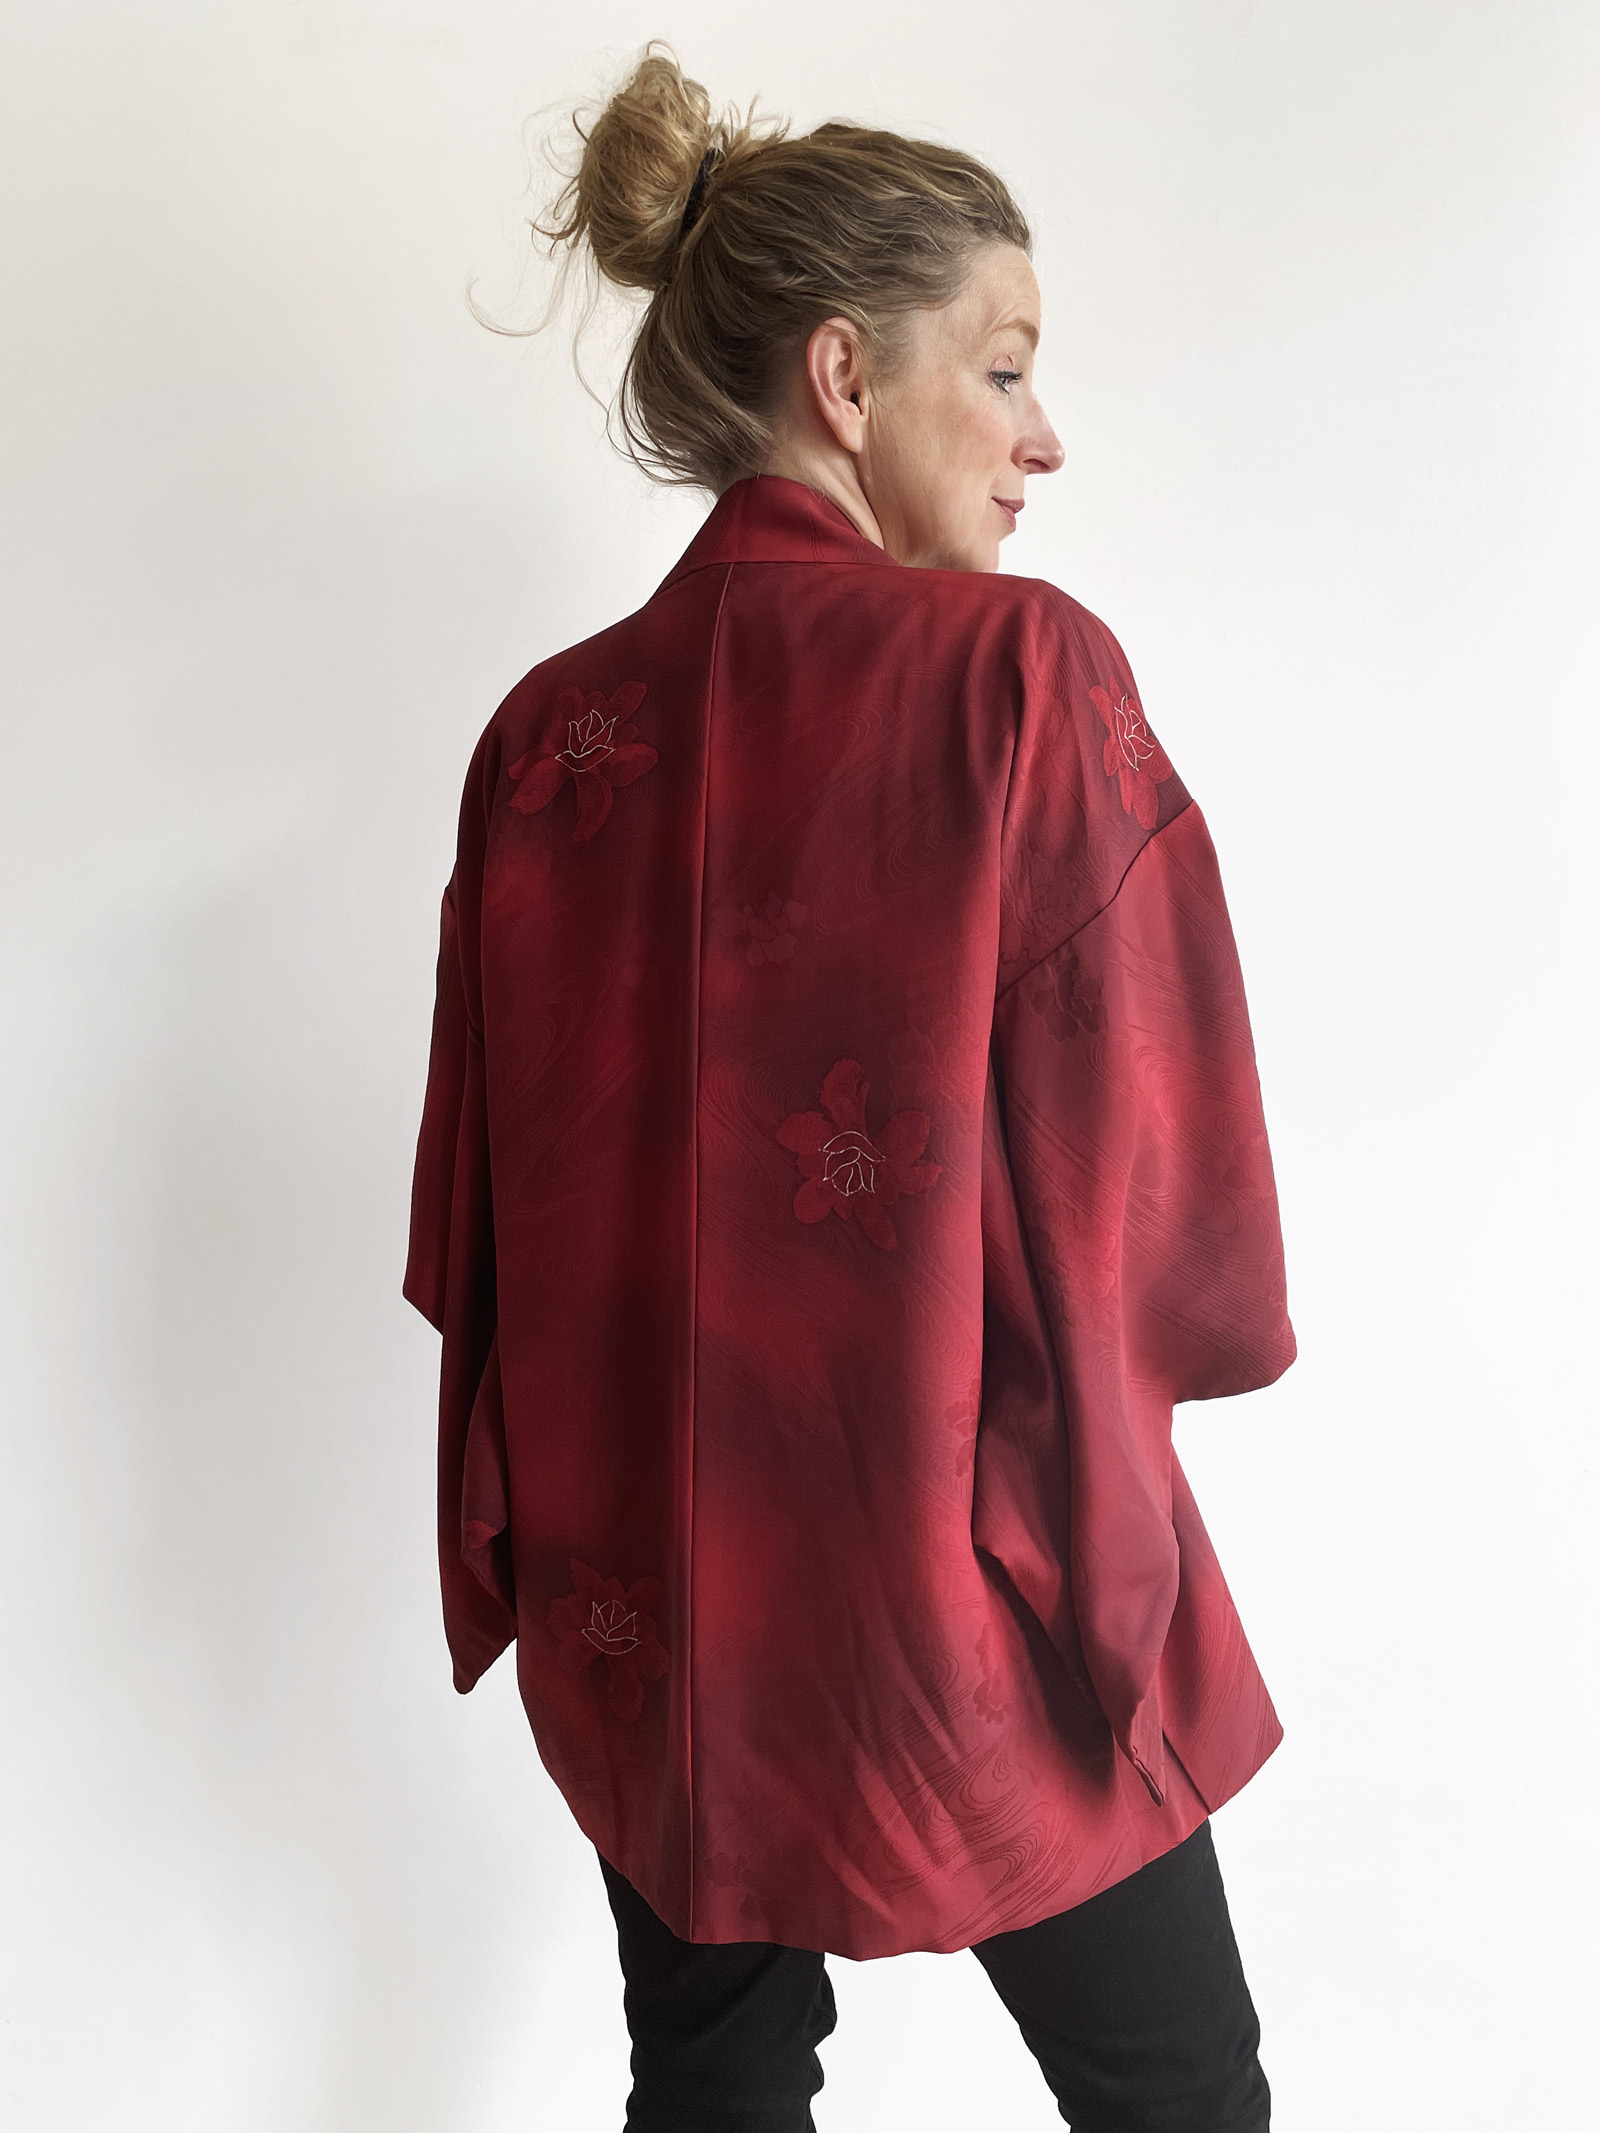 Aiko – Gorgeous Kimono jacket in imperial red